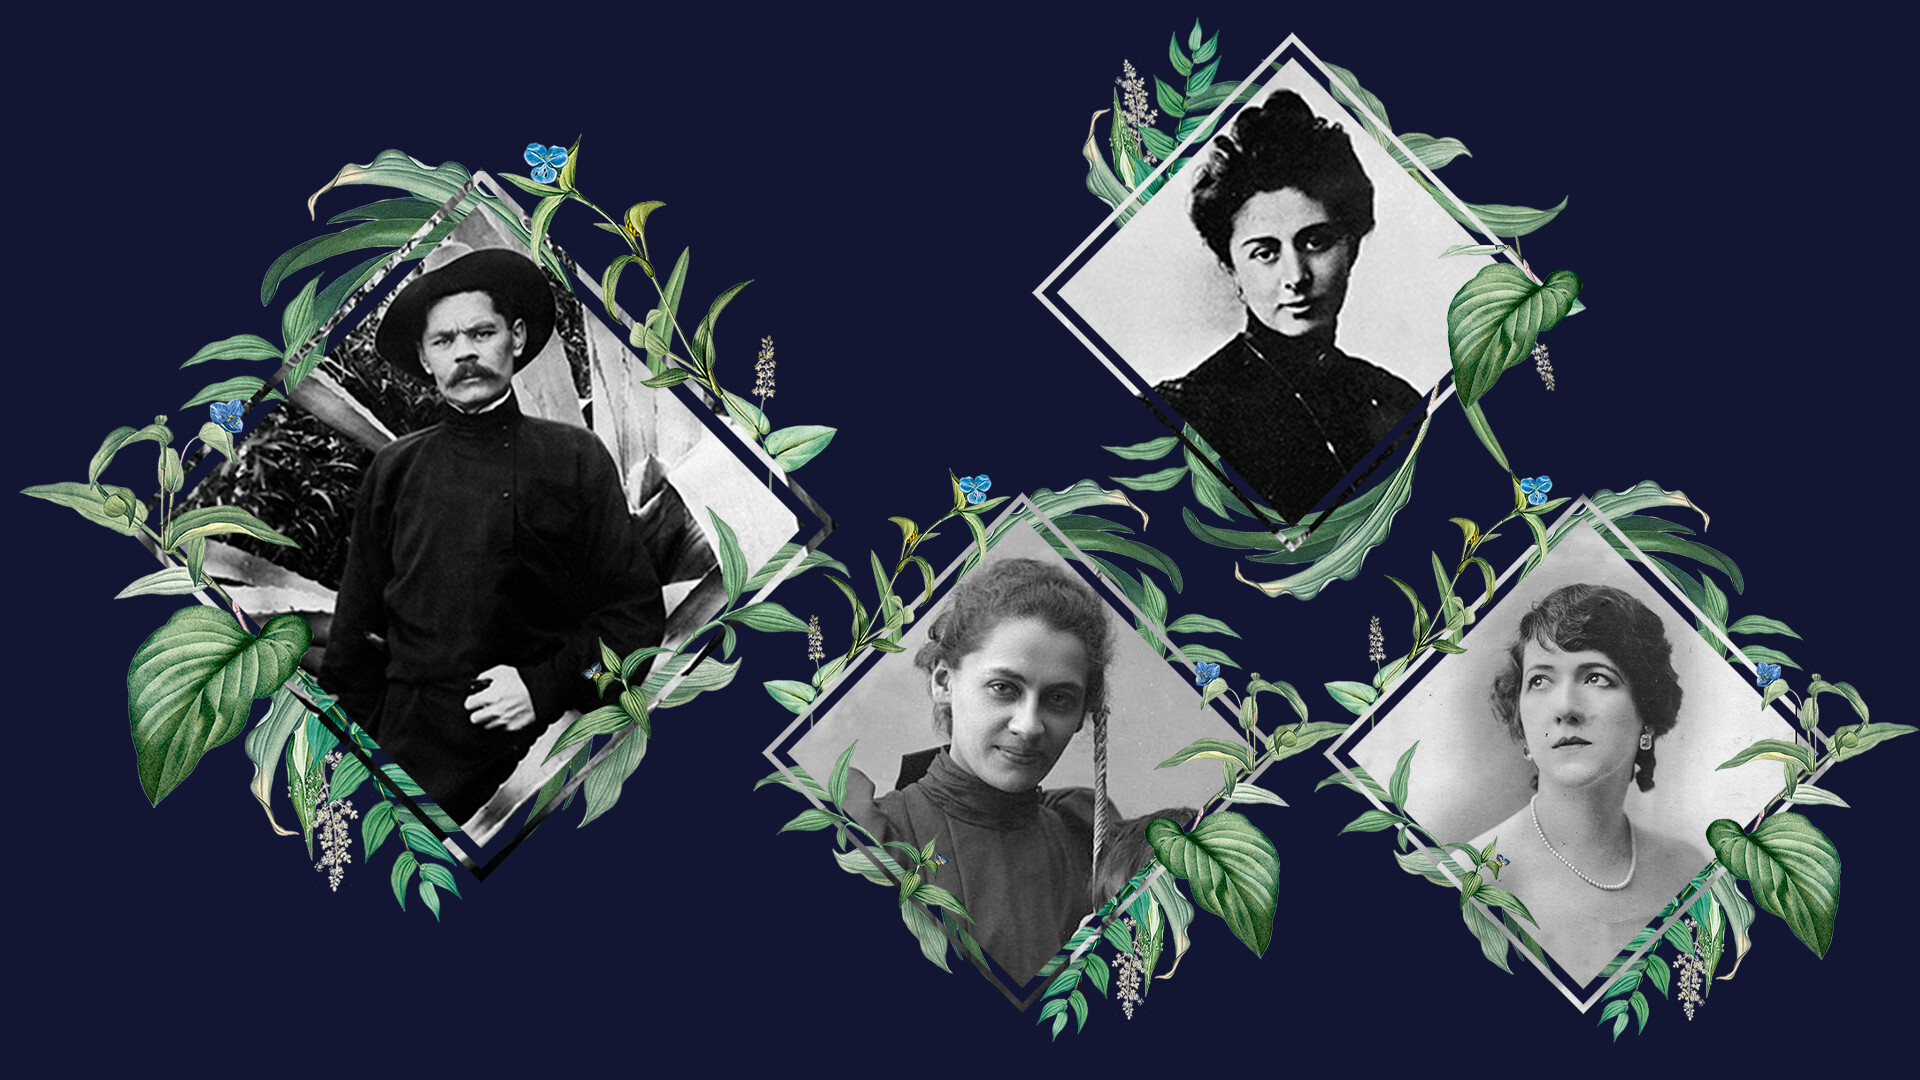 Iz-Der: Maxim Gorki, Ekaterina Peshkova, María Andréieva, María Budberg